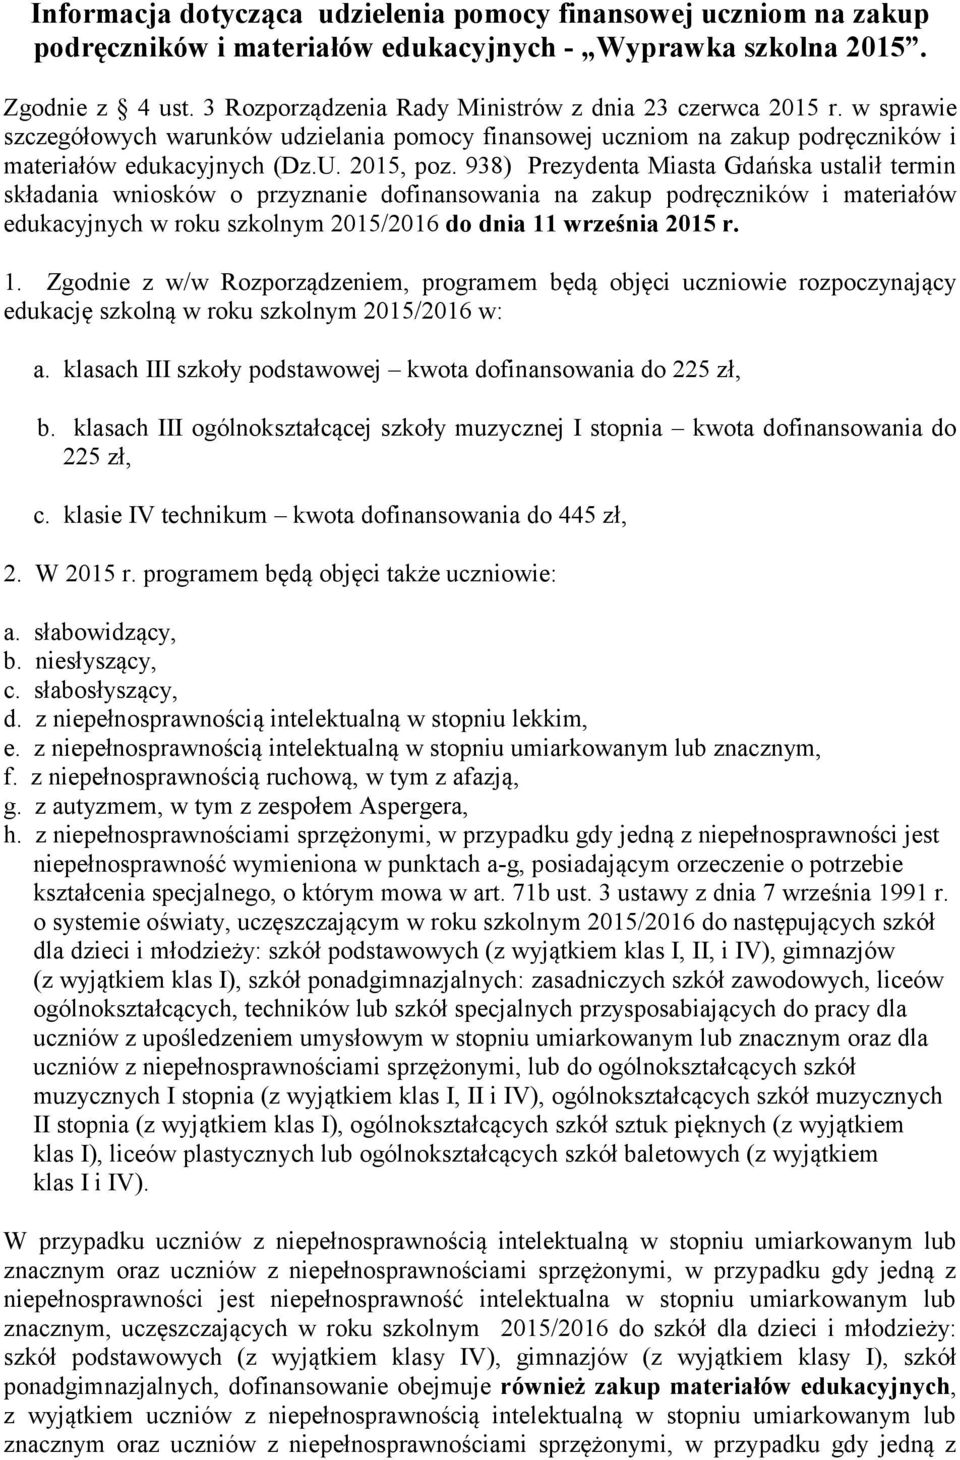 938) Prezydenta Miasta Gdańska ustalił termin składania wniosków o przyznanie dofinansowania na zakup podręczników i materiałów edukacyjnych w roku szkolnym 2015/2016 do dnia 11